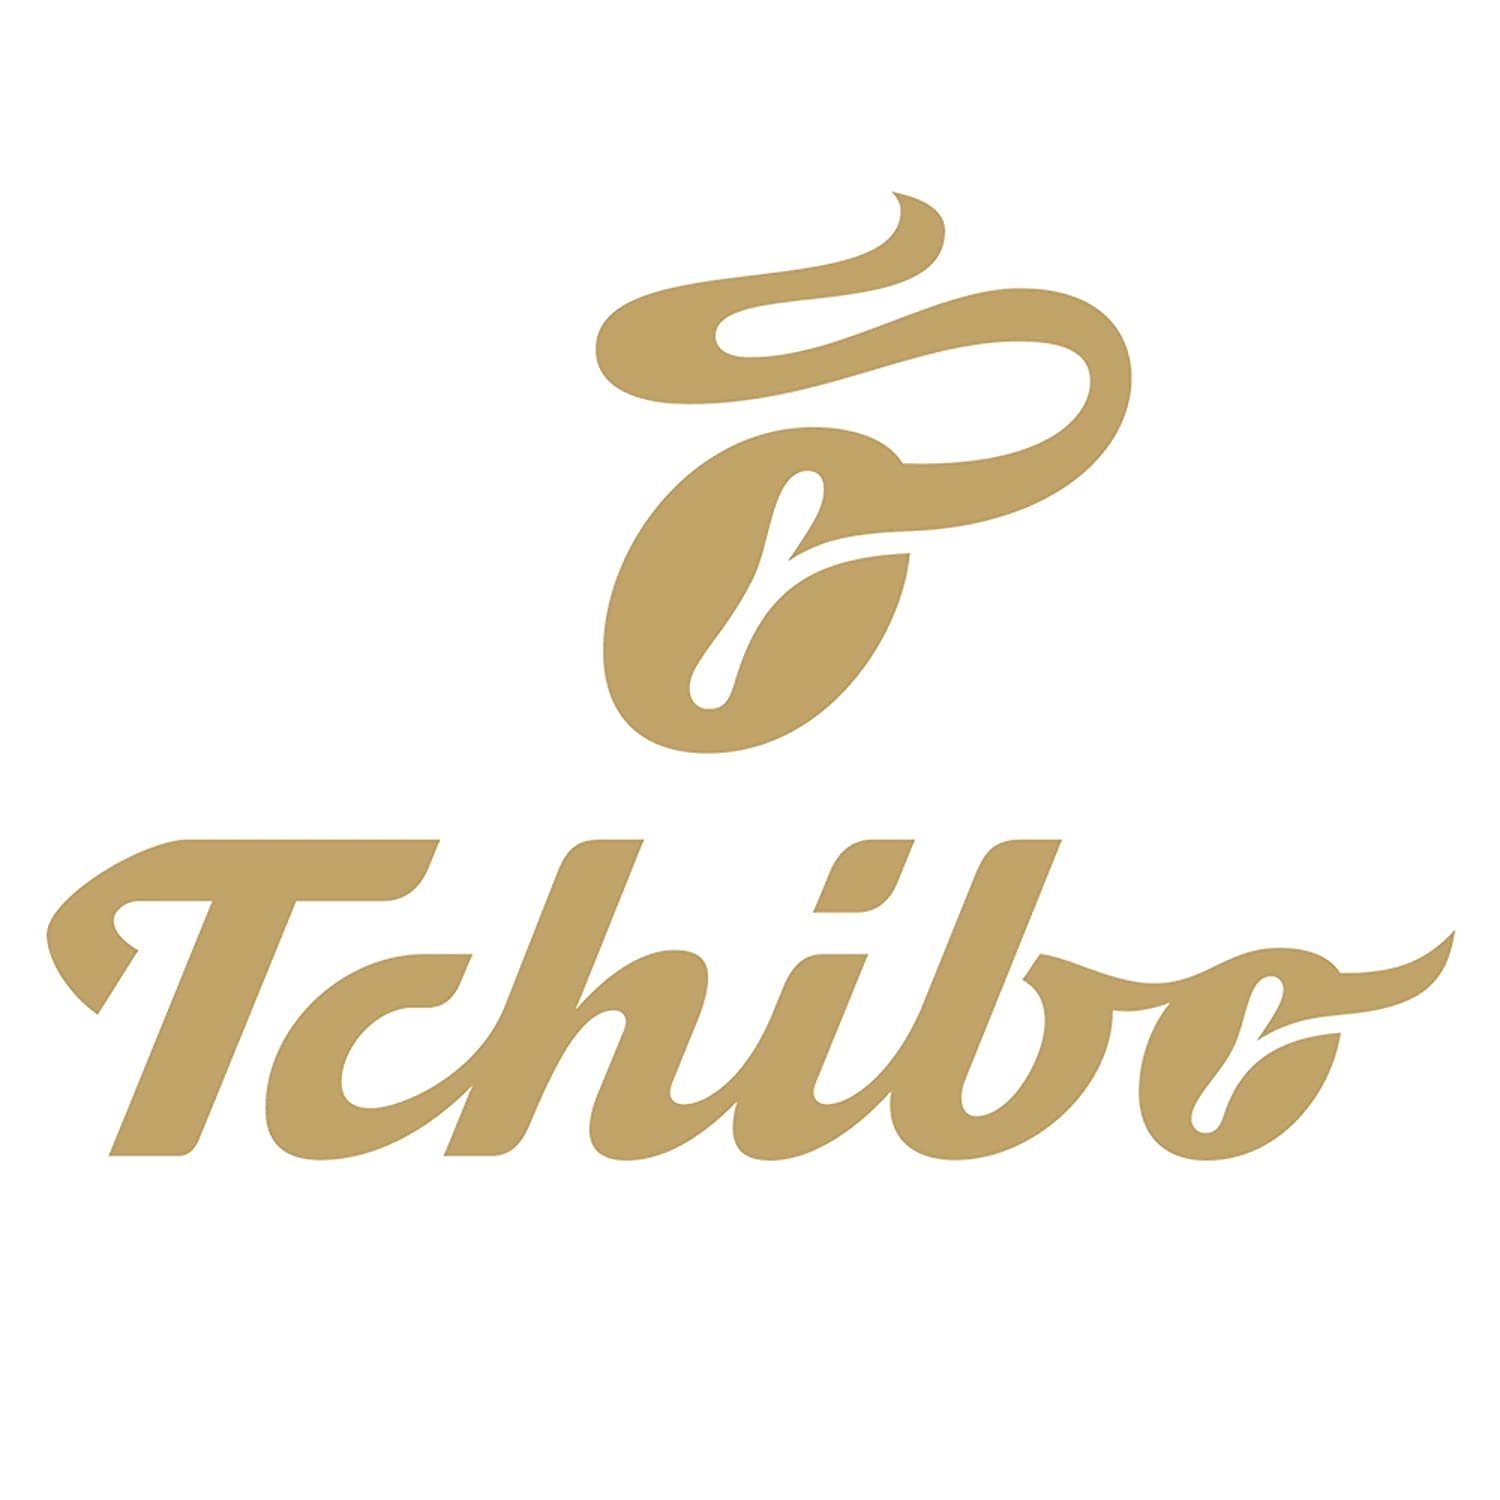 Tchibo Qbo Caffè Baba Budan Premium Kaffeekapseln, 81 Stück - 3x27 Kapseln (Caffè, Intensität 09/10, Noten dunkler Schokolade), nachhaltig, aus 70% nachwachsenden Rohstoffen & klimaneutral kompensiert